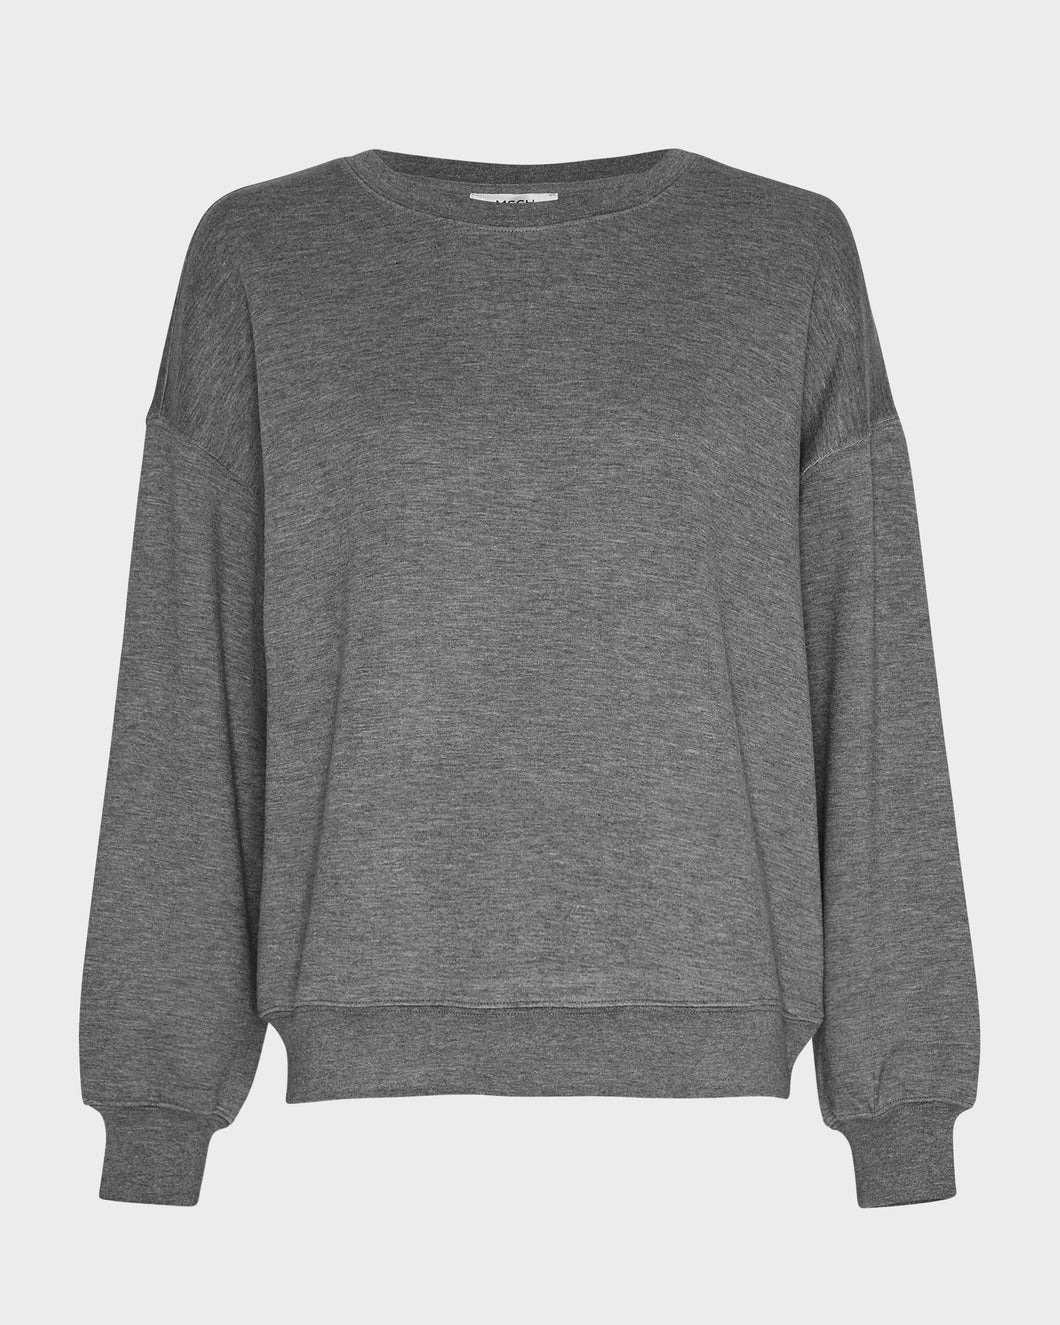 MSCHIMA Sweater, Mid grey melange